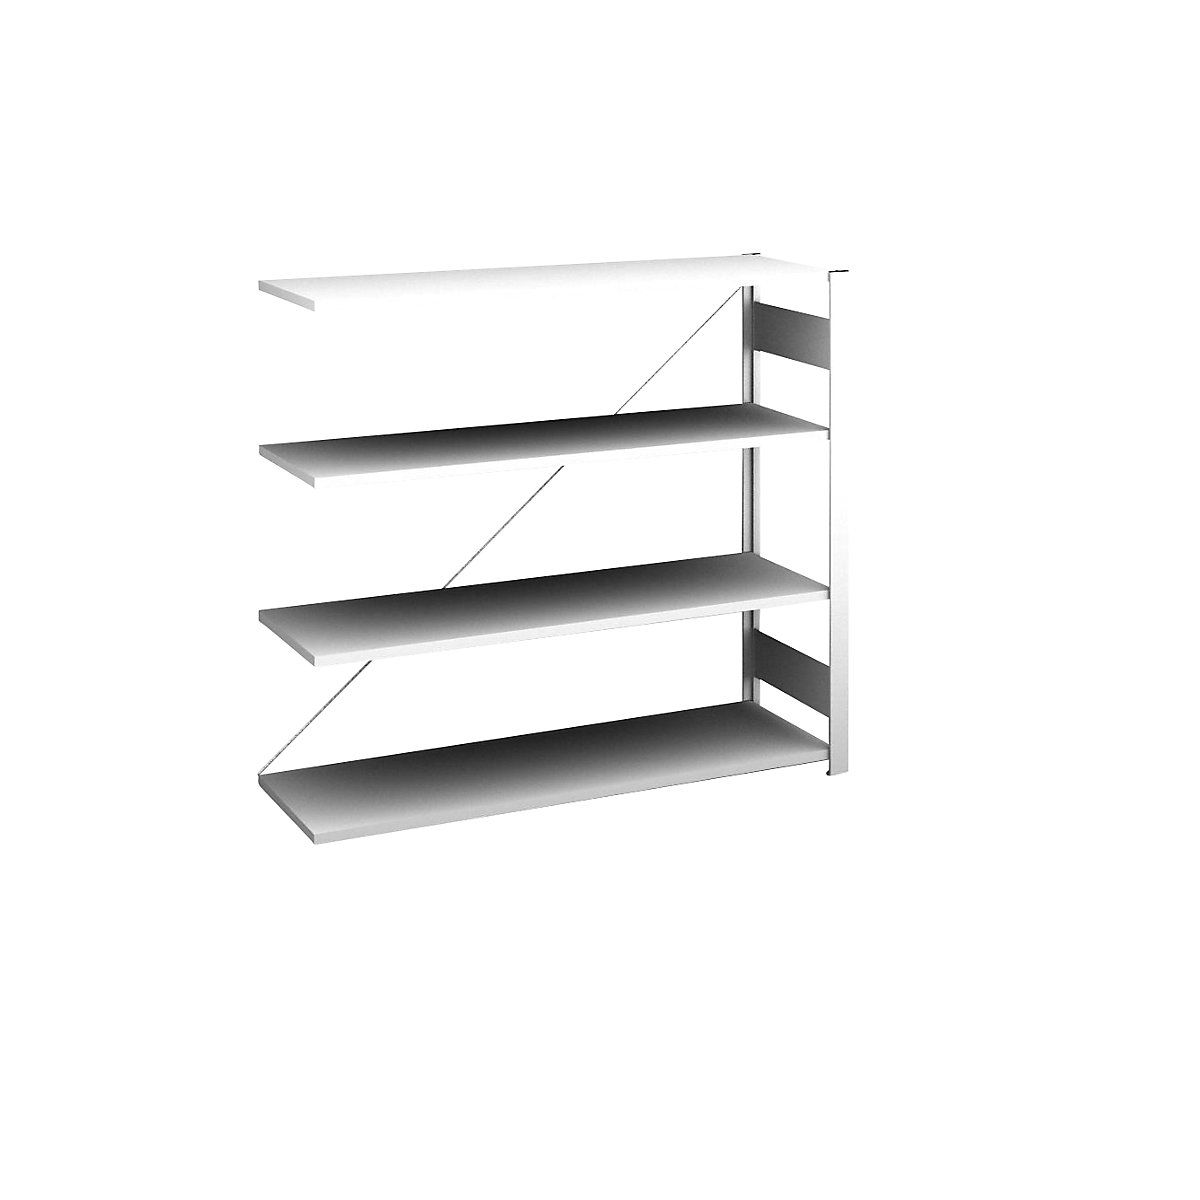 Sideboard shelving unit, light grey – hofe, height 1200 mm, 4 shelves, extension shelf unit, shelf depth 400 mm, max. shelf load 180 kg-3